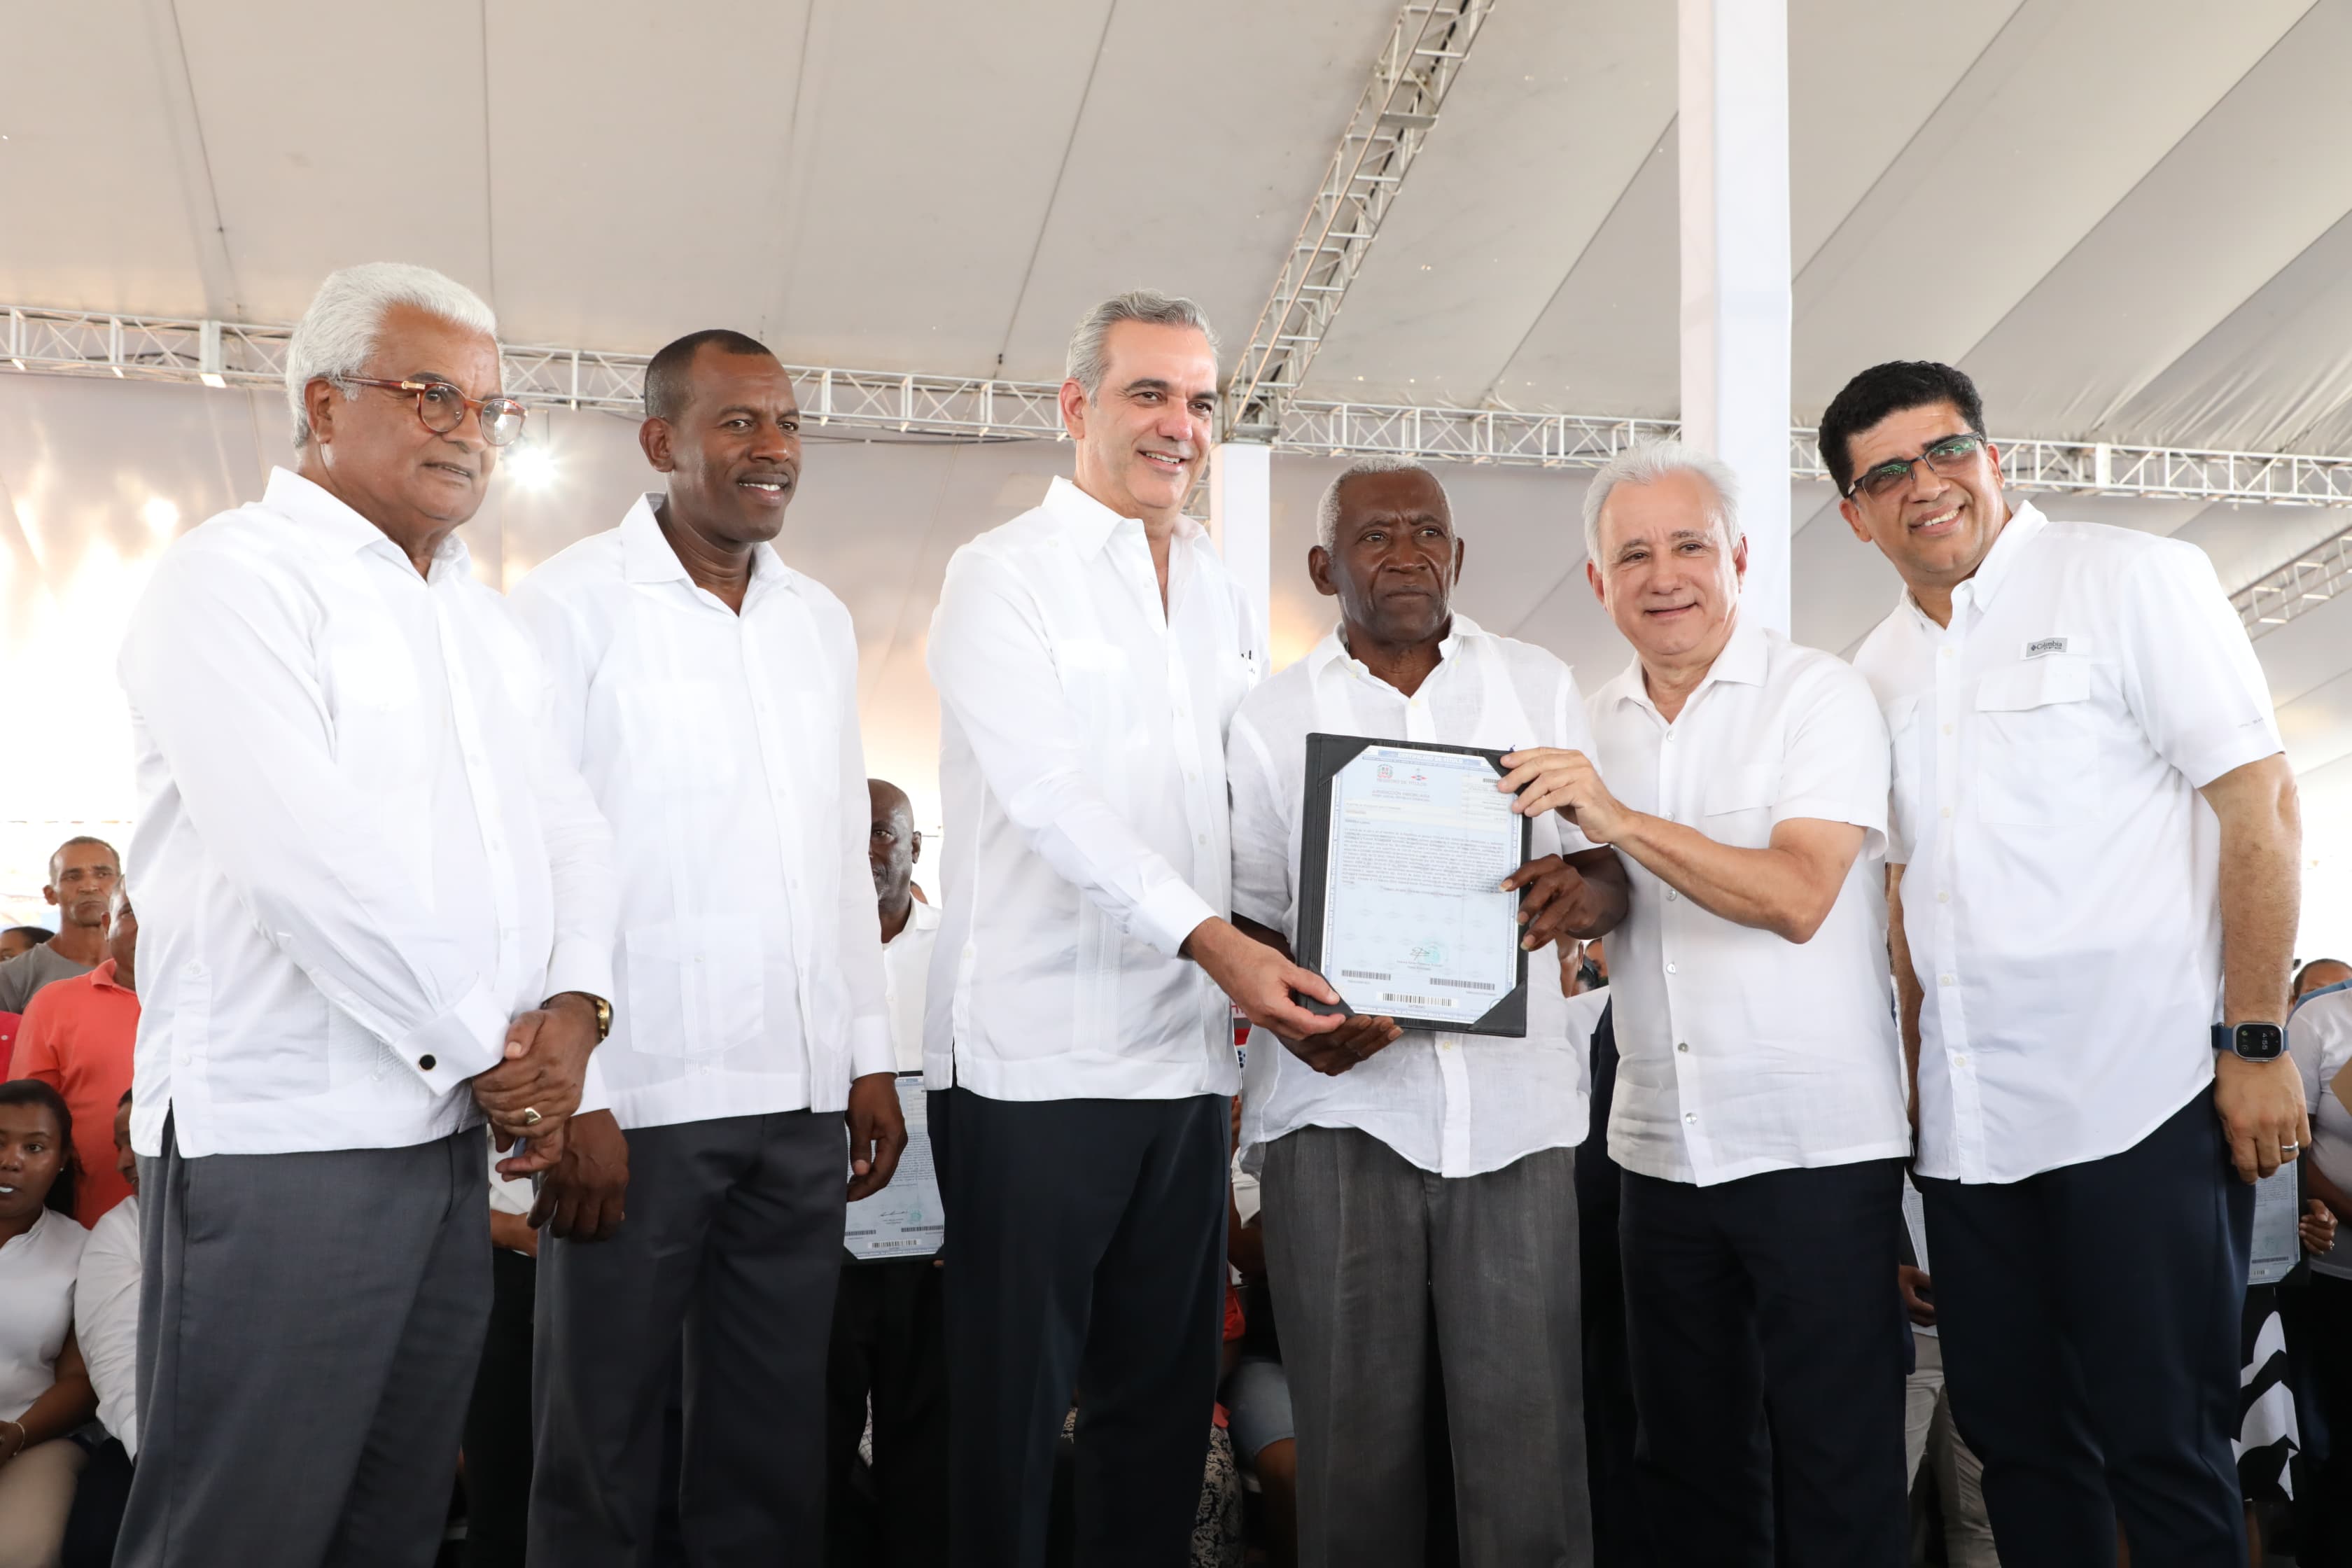 REPÚBLICA DOMINICANA: Presidente Abinader entrega 1,130 títulos más en El Tamarindo, Santo Domingo Este, ya son 5,381 los entregados en este sector